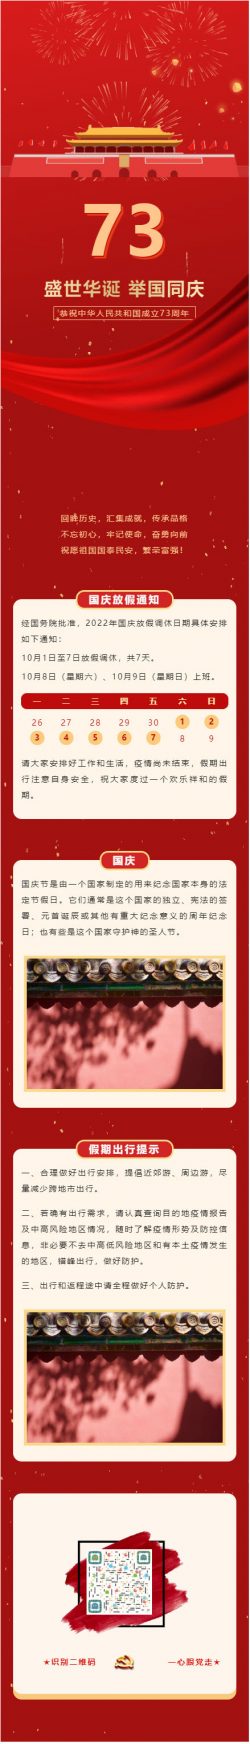 微信国庆节图文模板十一小长假文章素材红色党政推送图文